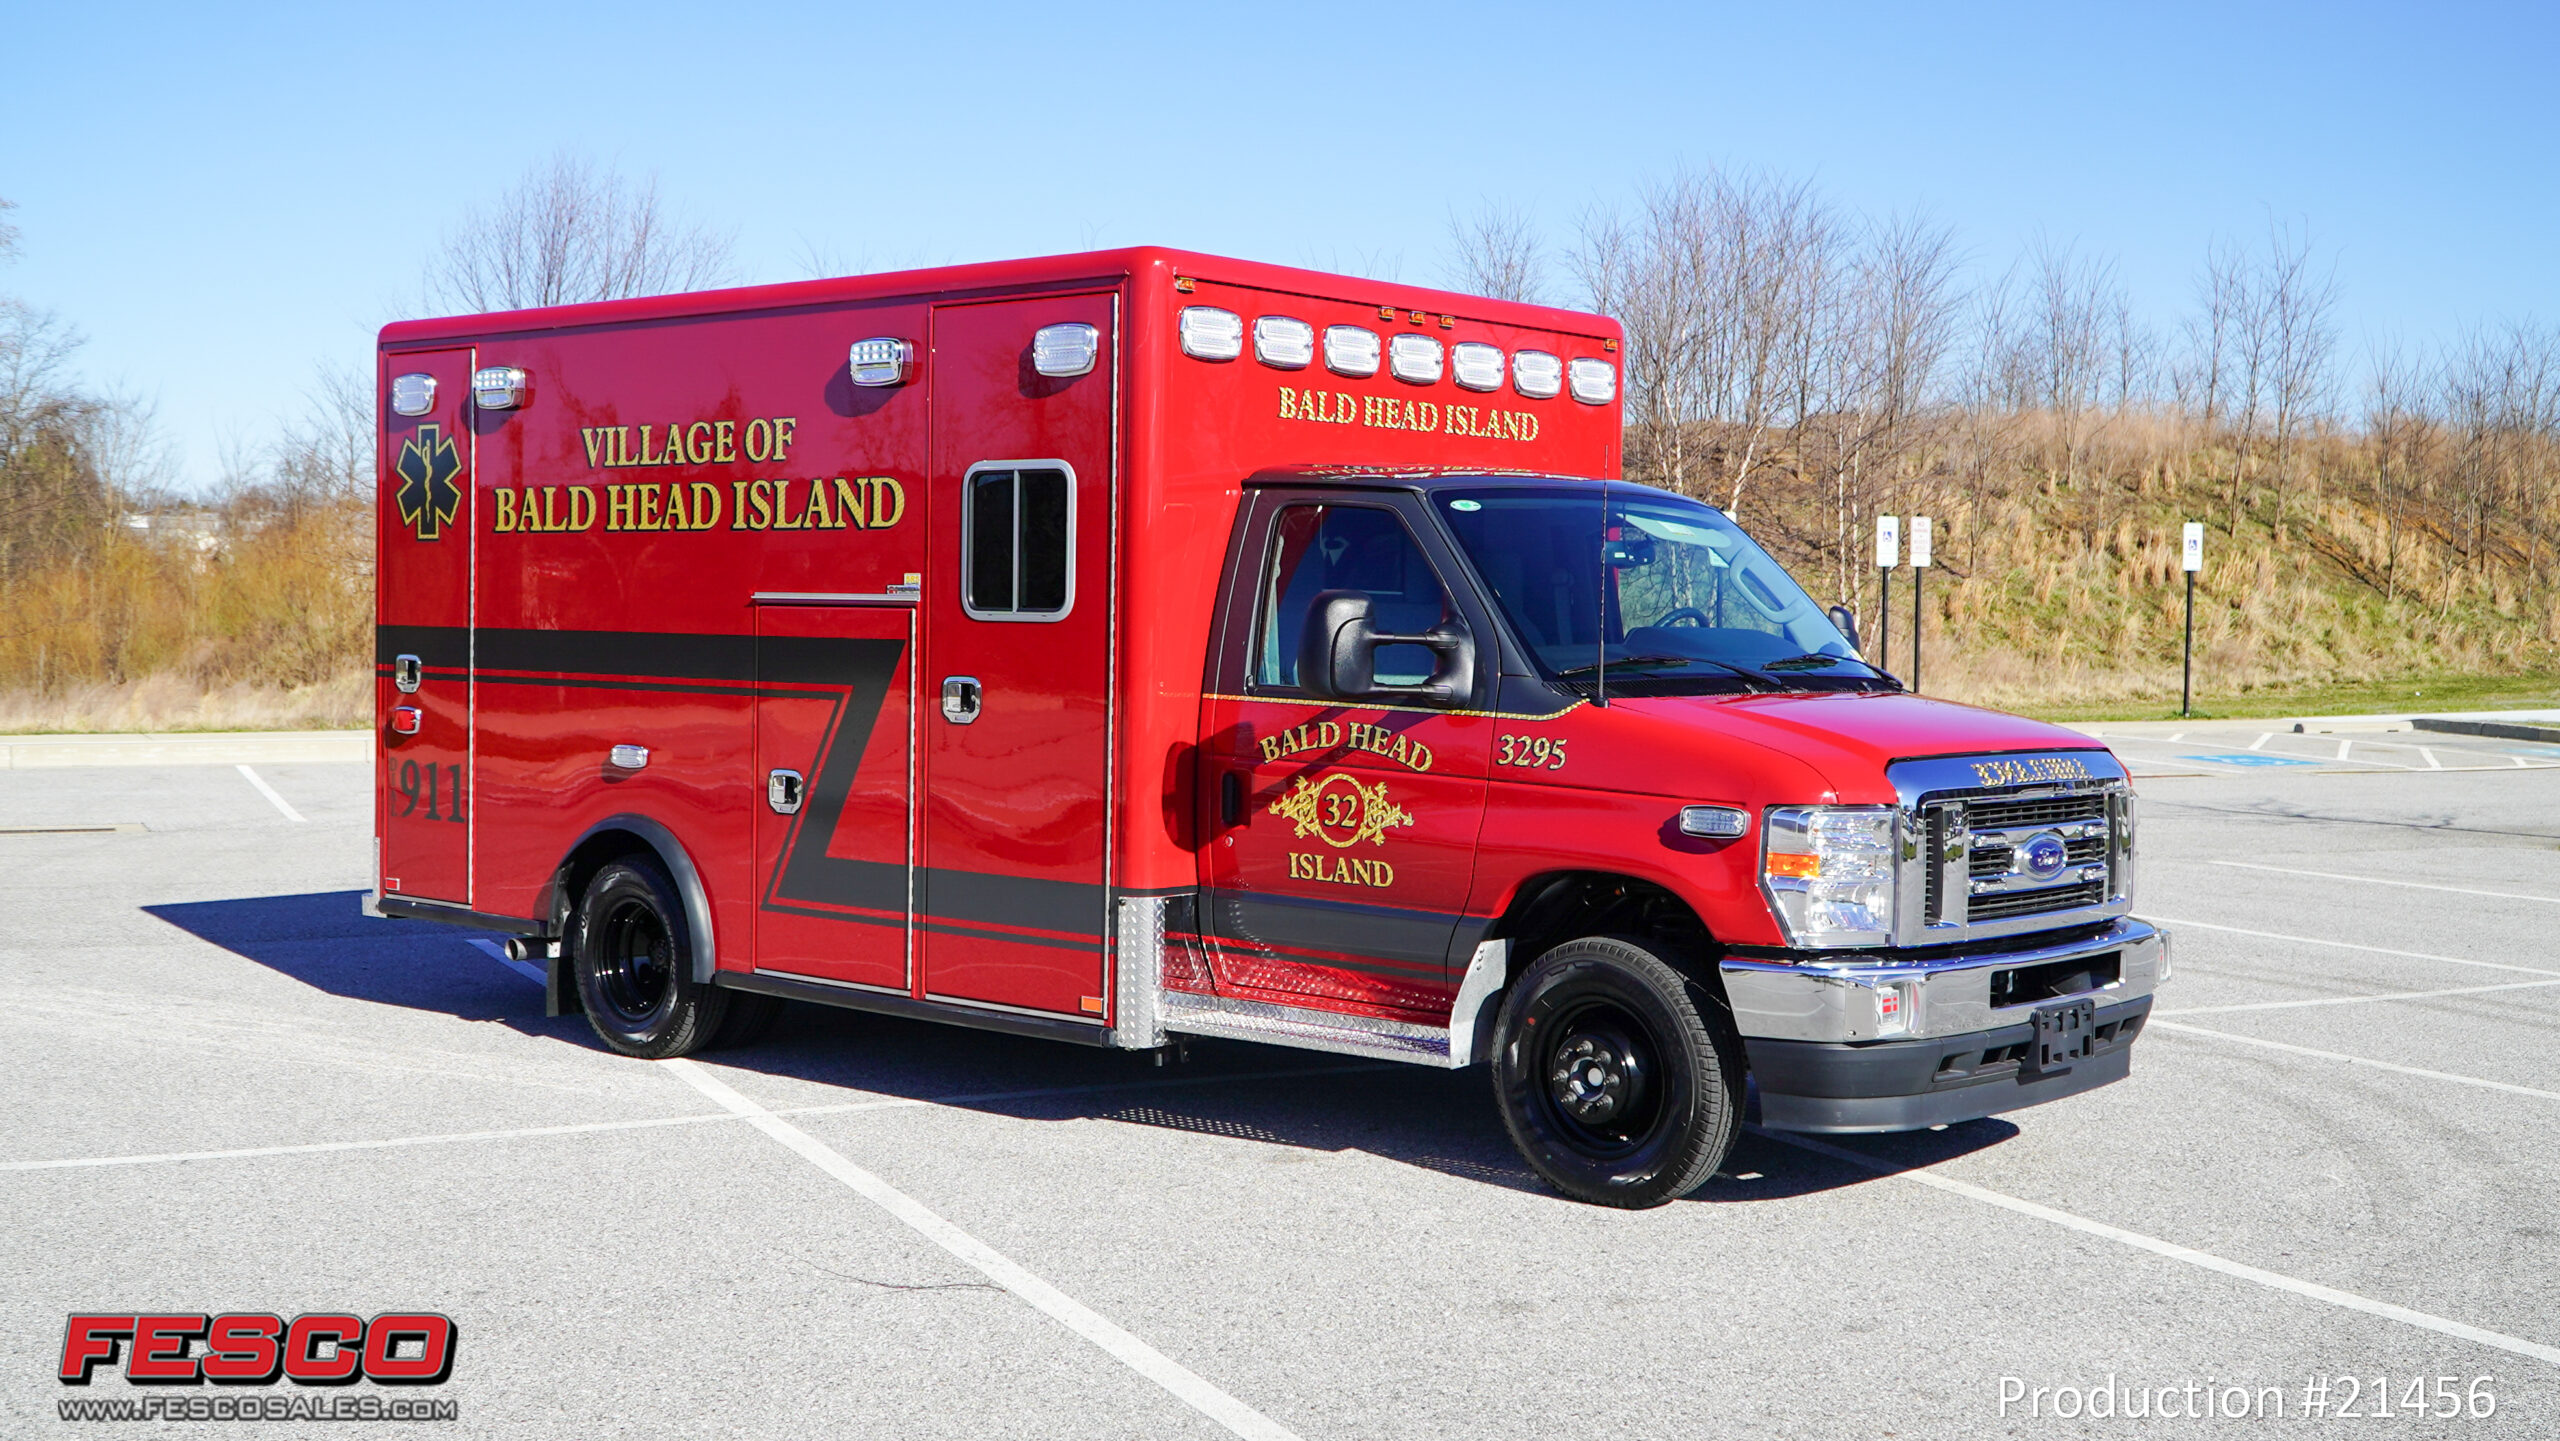 Bald-Head-Island-21456-16-scaled Horton Emergency Vehicle